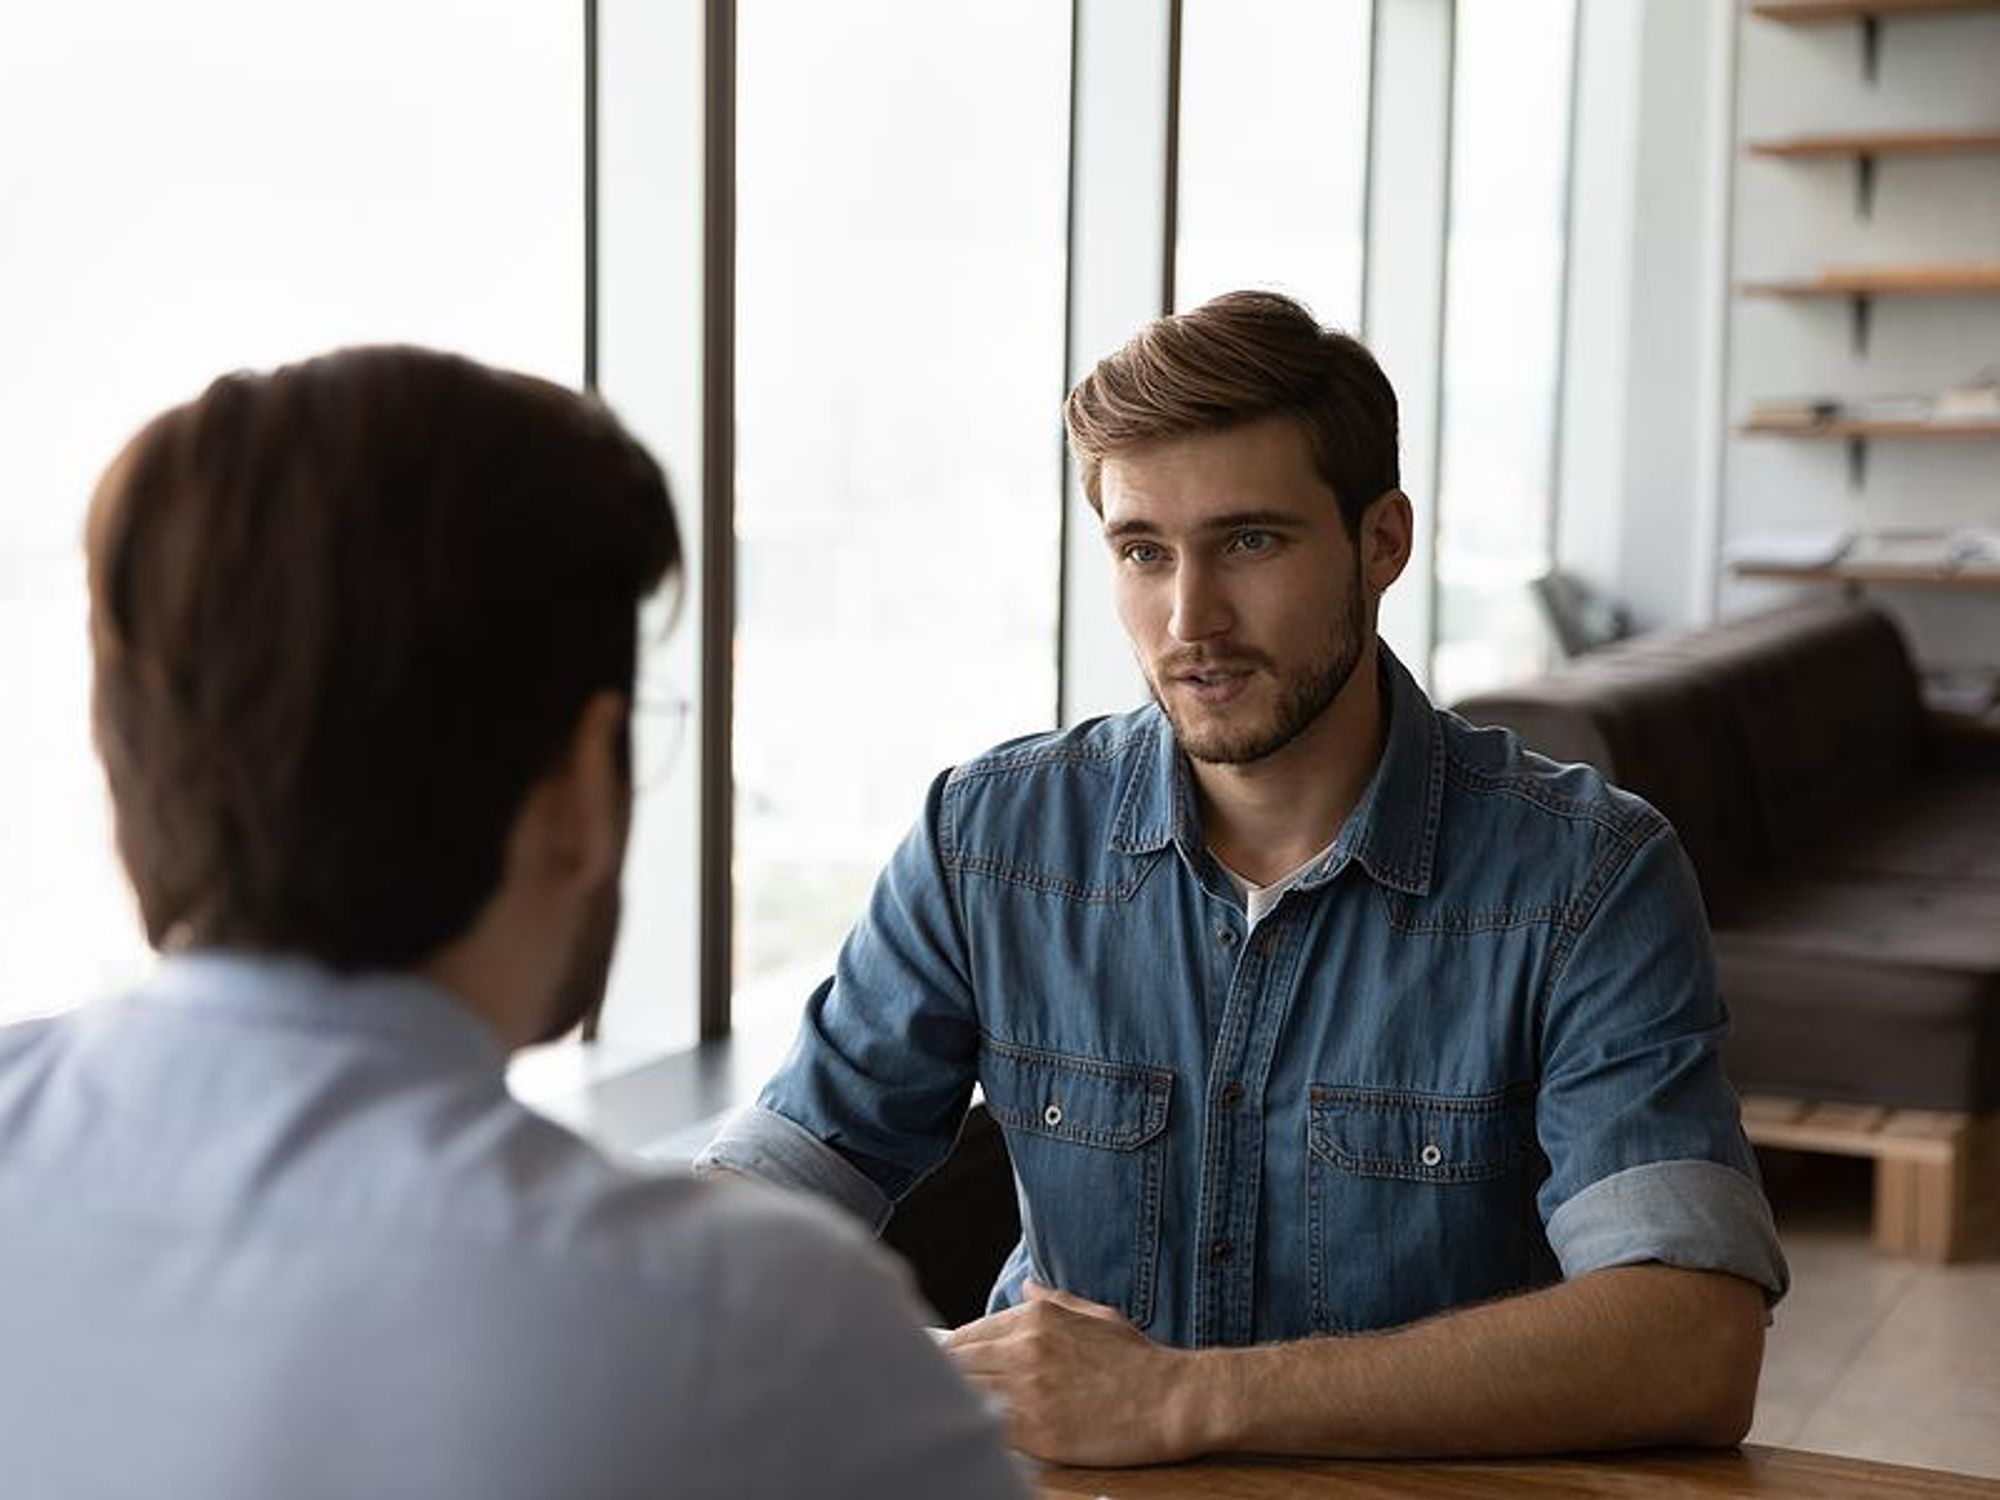 Man accepts a job offer during an interview